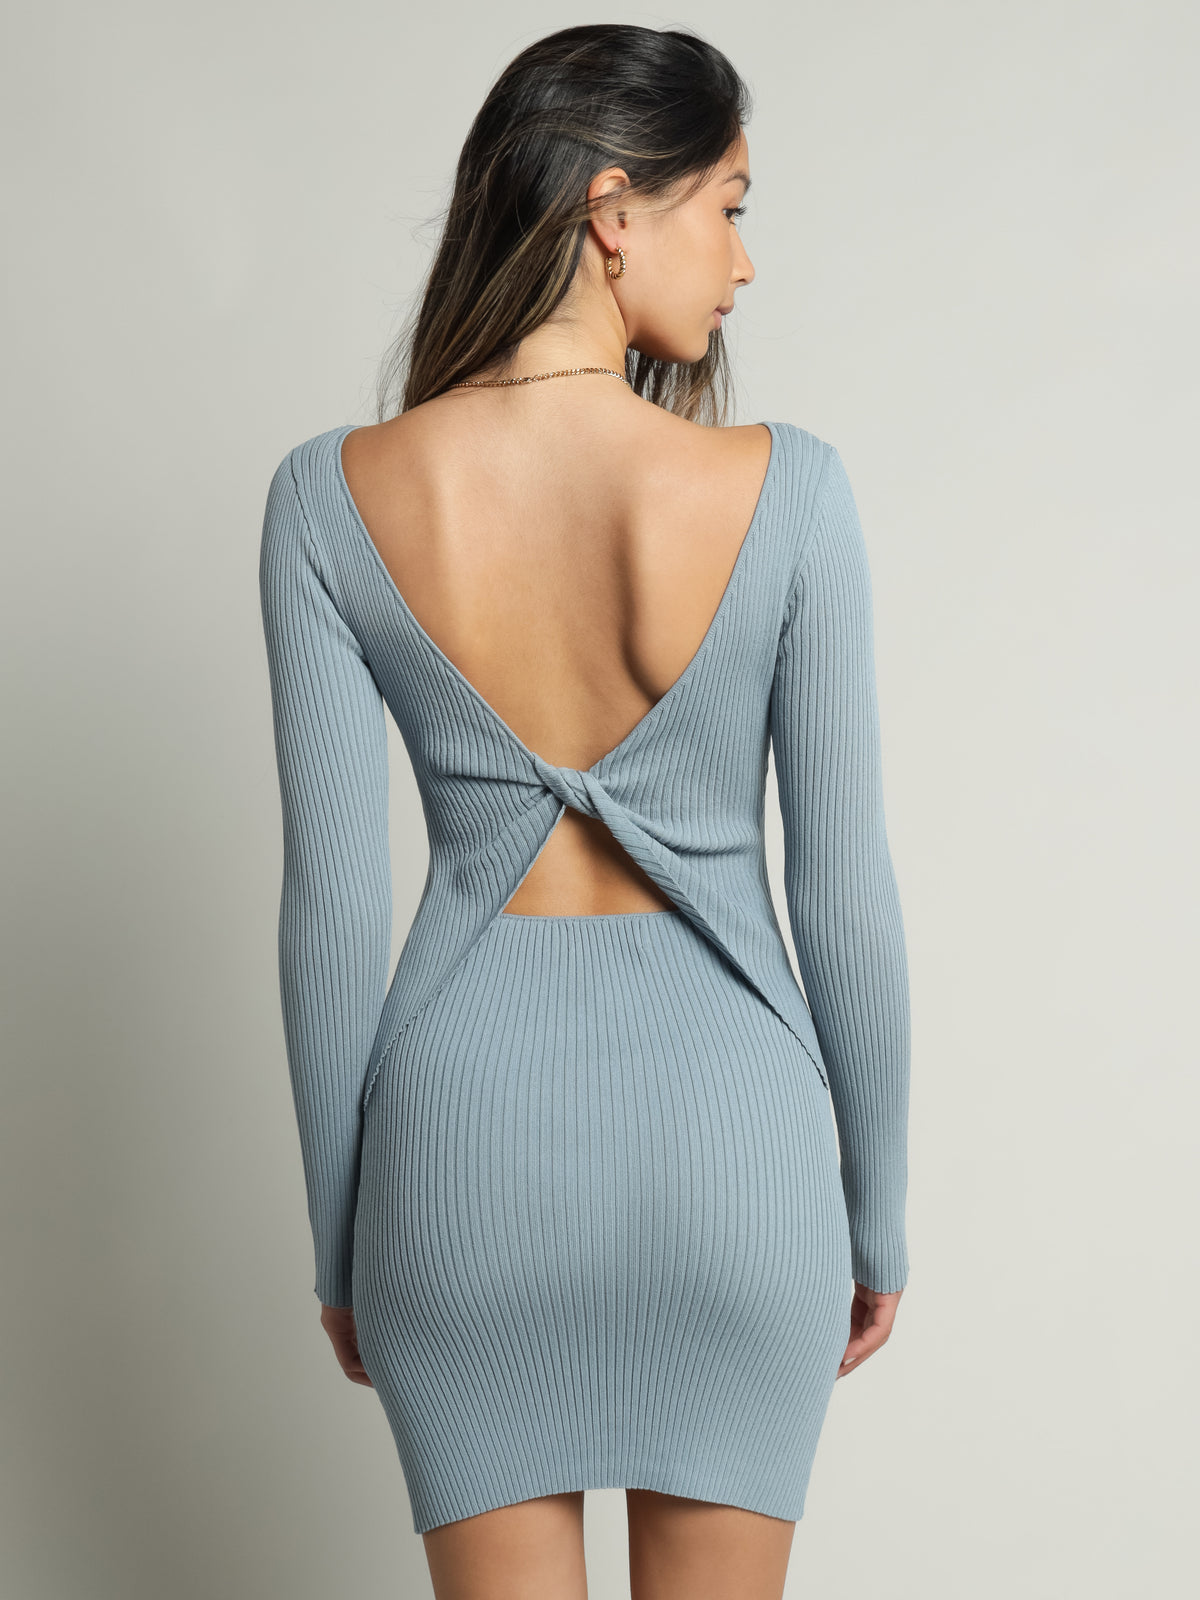 Dionne Long Sleeve Twist Back Dress in Horizon Blue